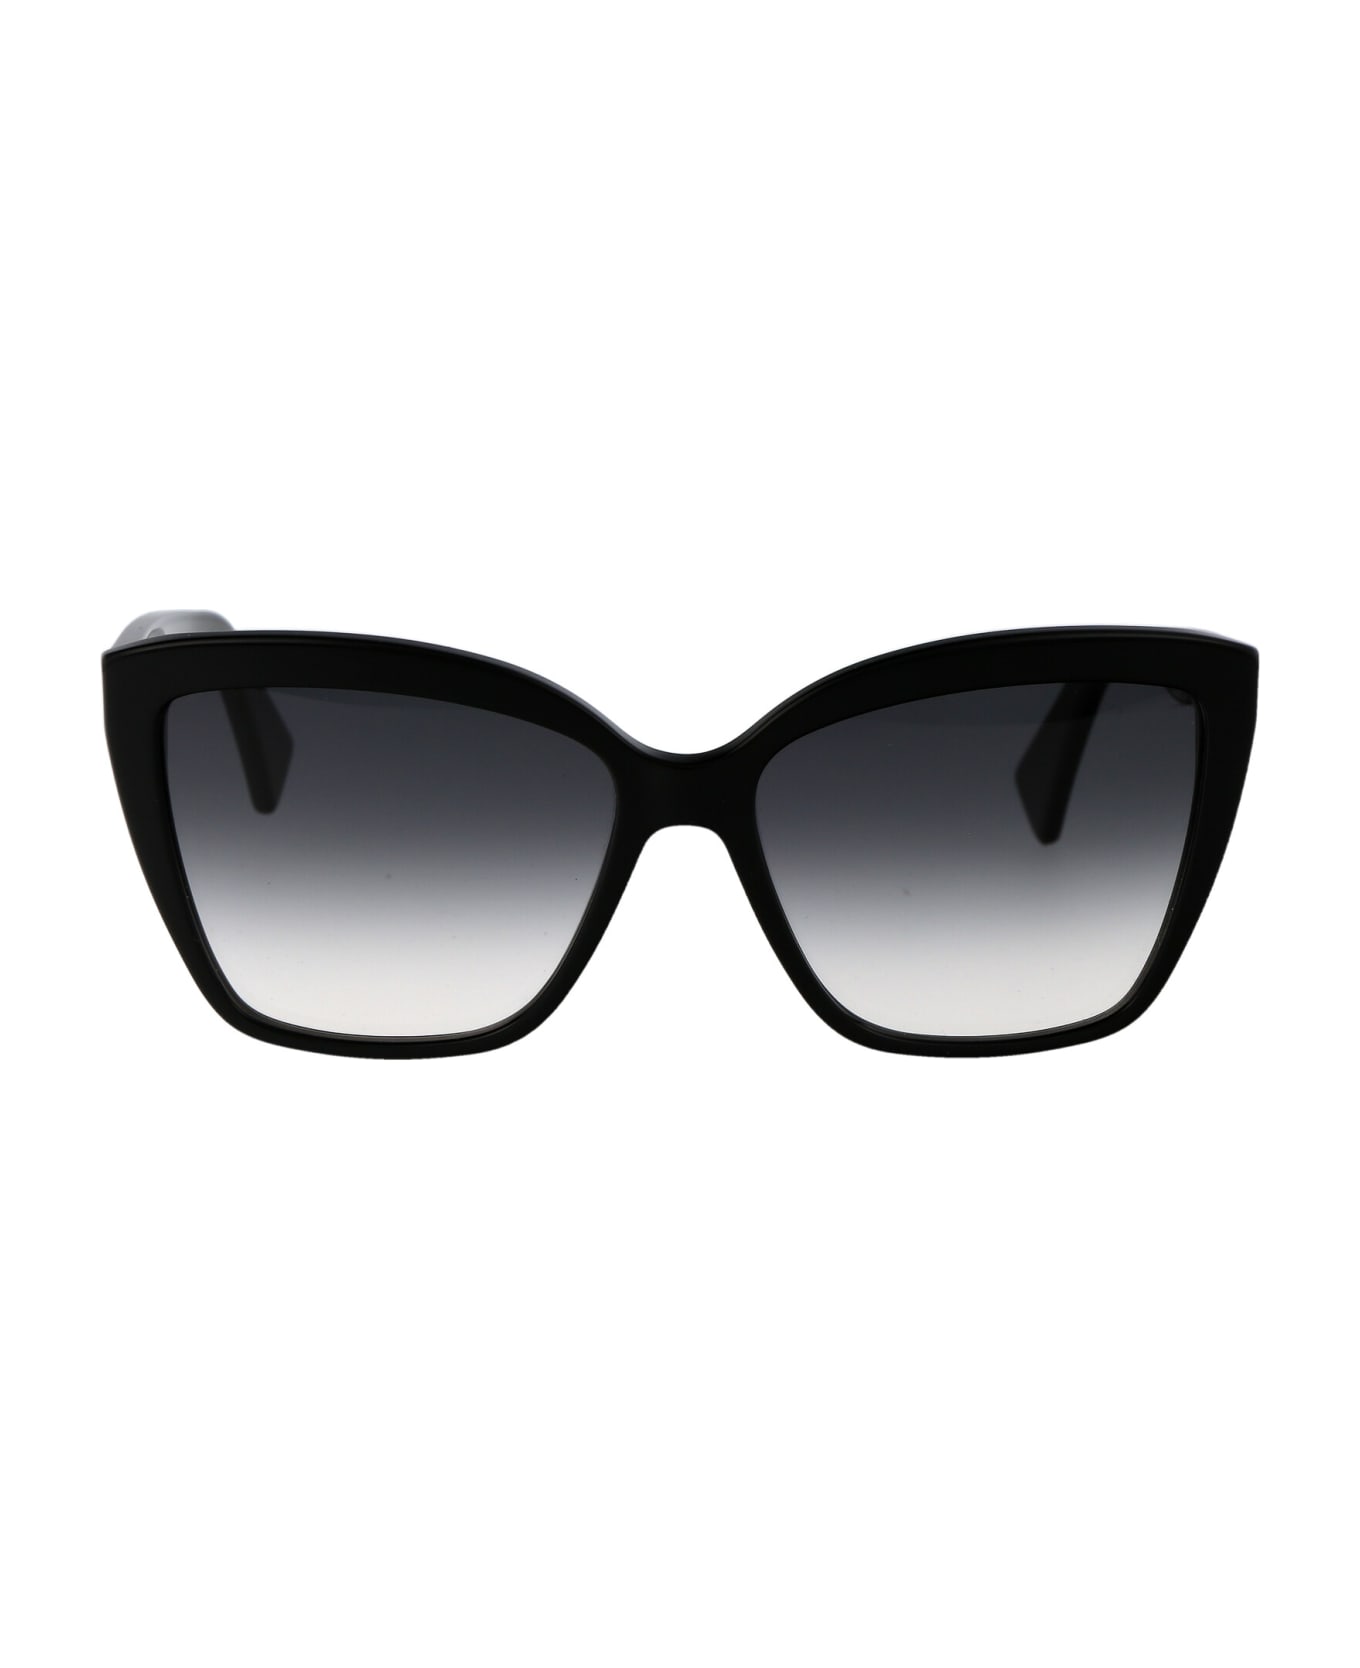 Lanvin Lnv617s Sunglasses - 001 BLACK